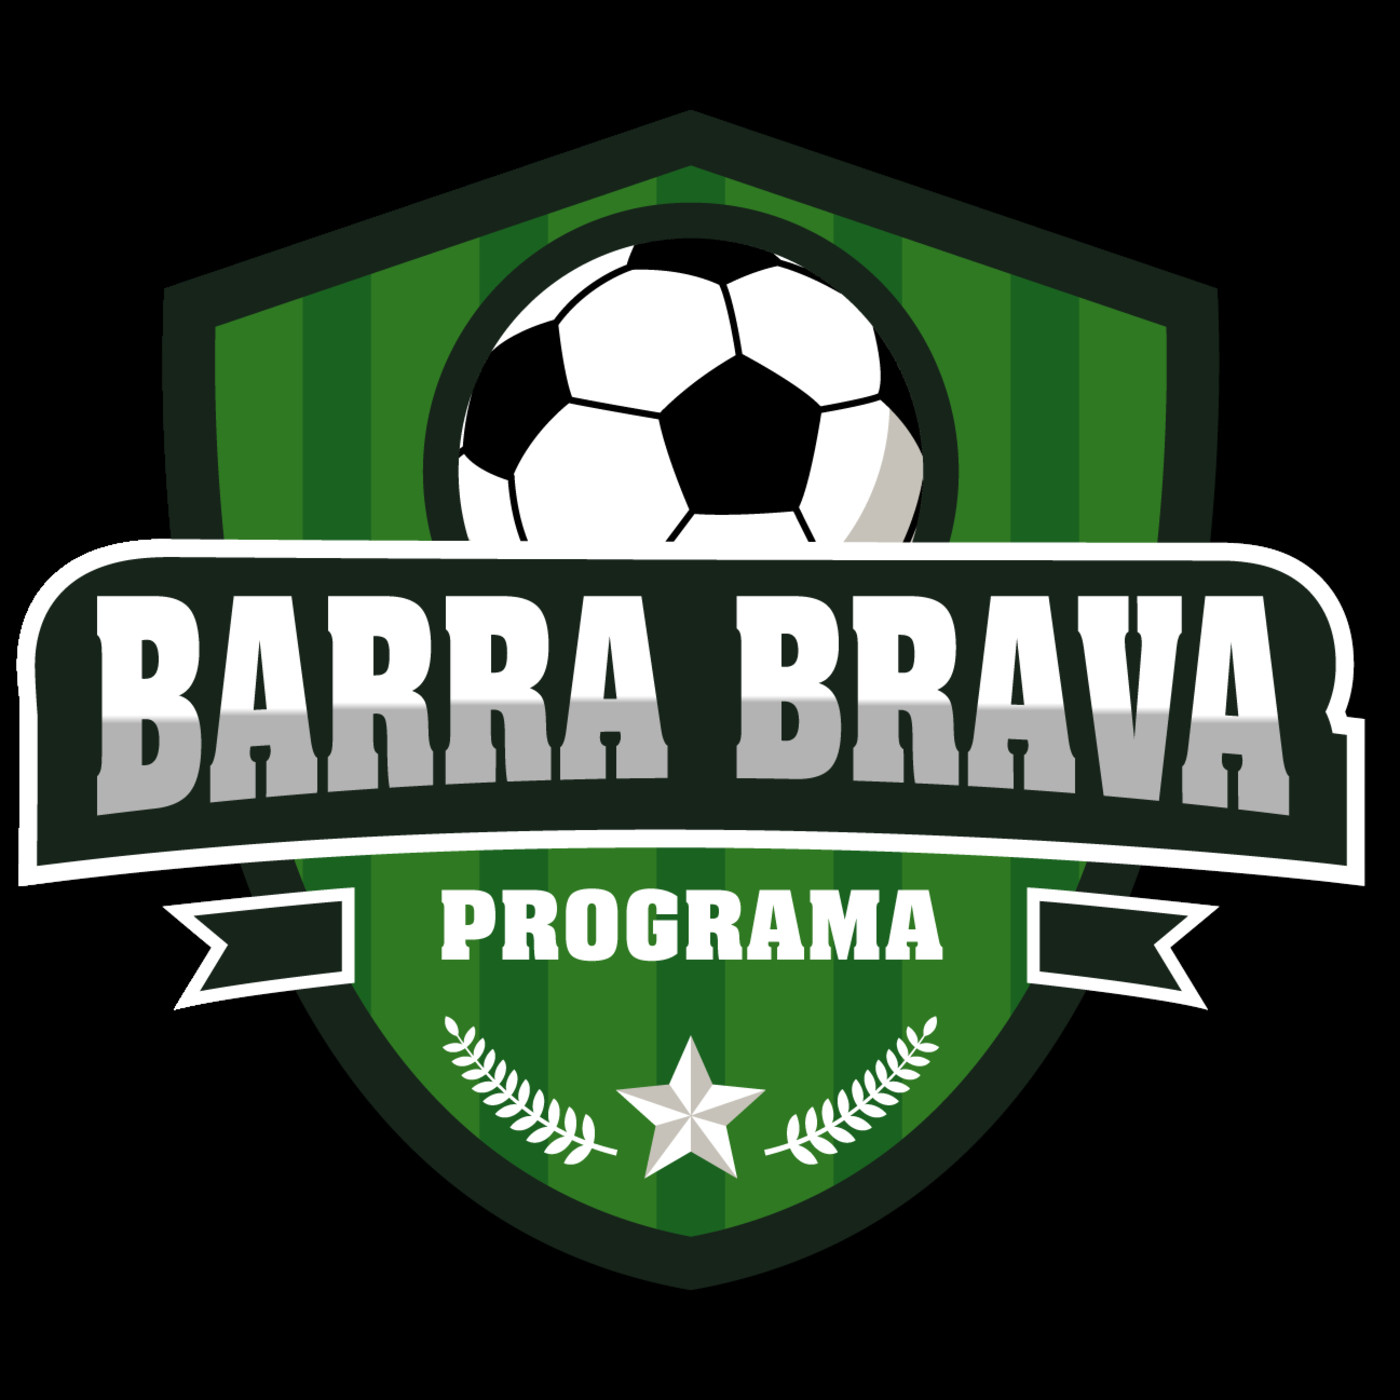 19. Podcast BARRA BRAVA Programa 19 de agosto de 2019